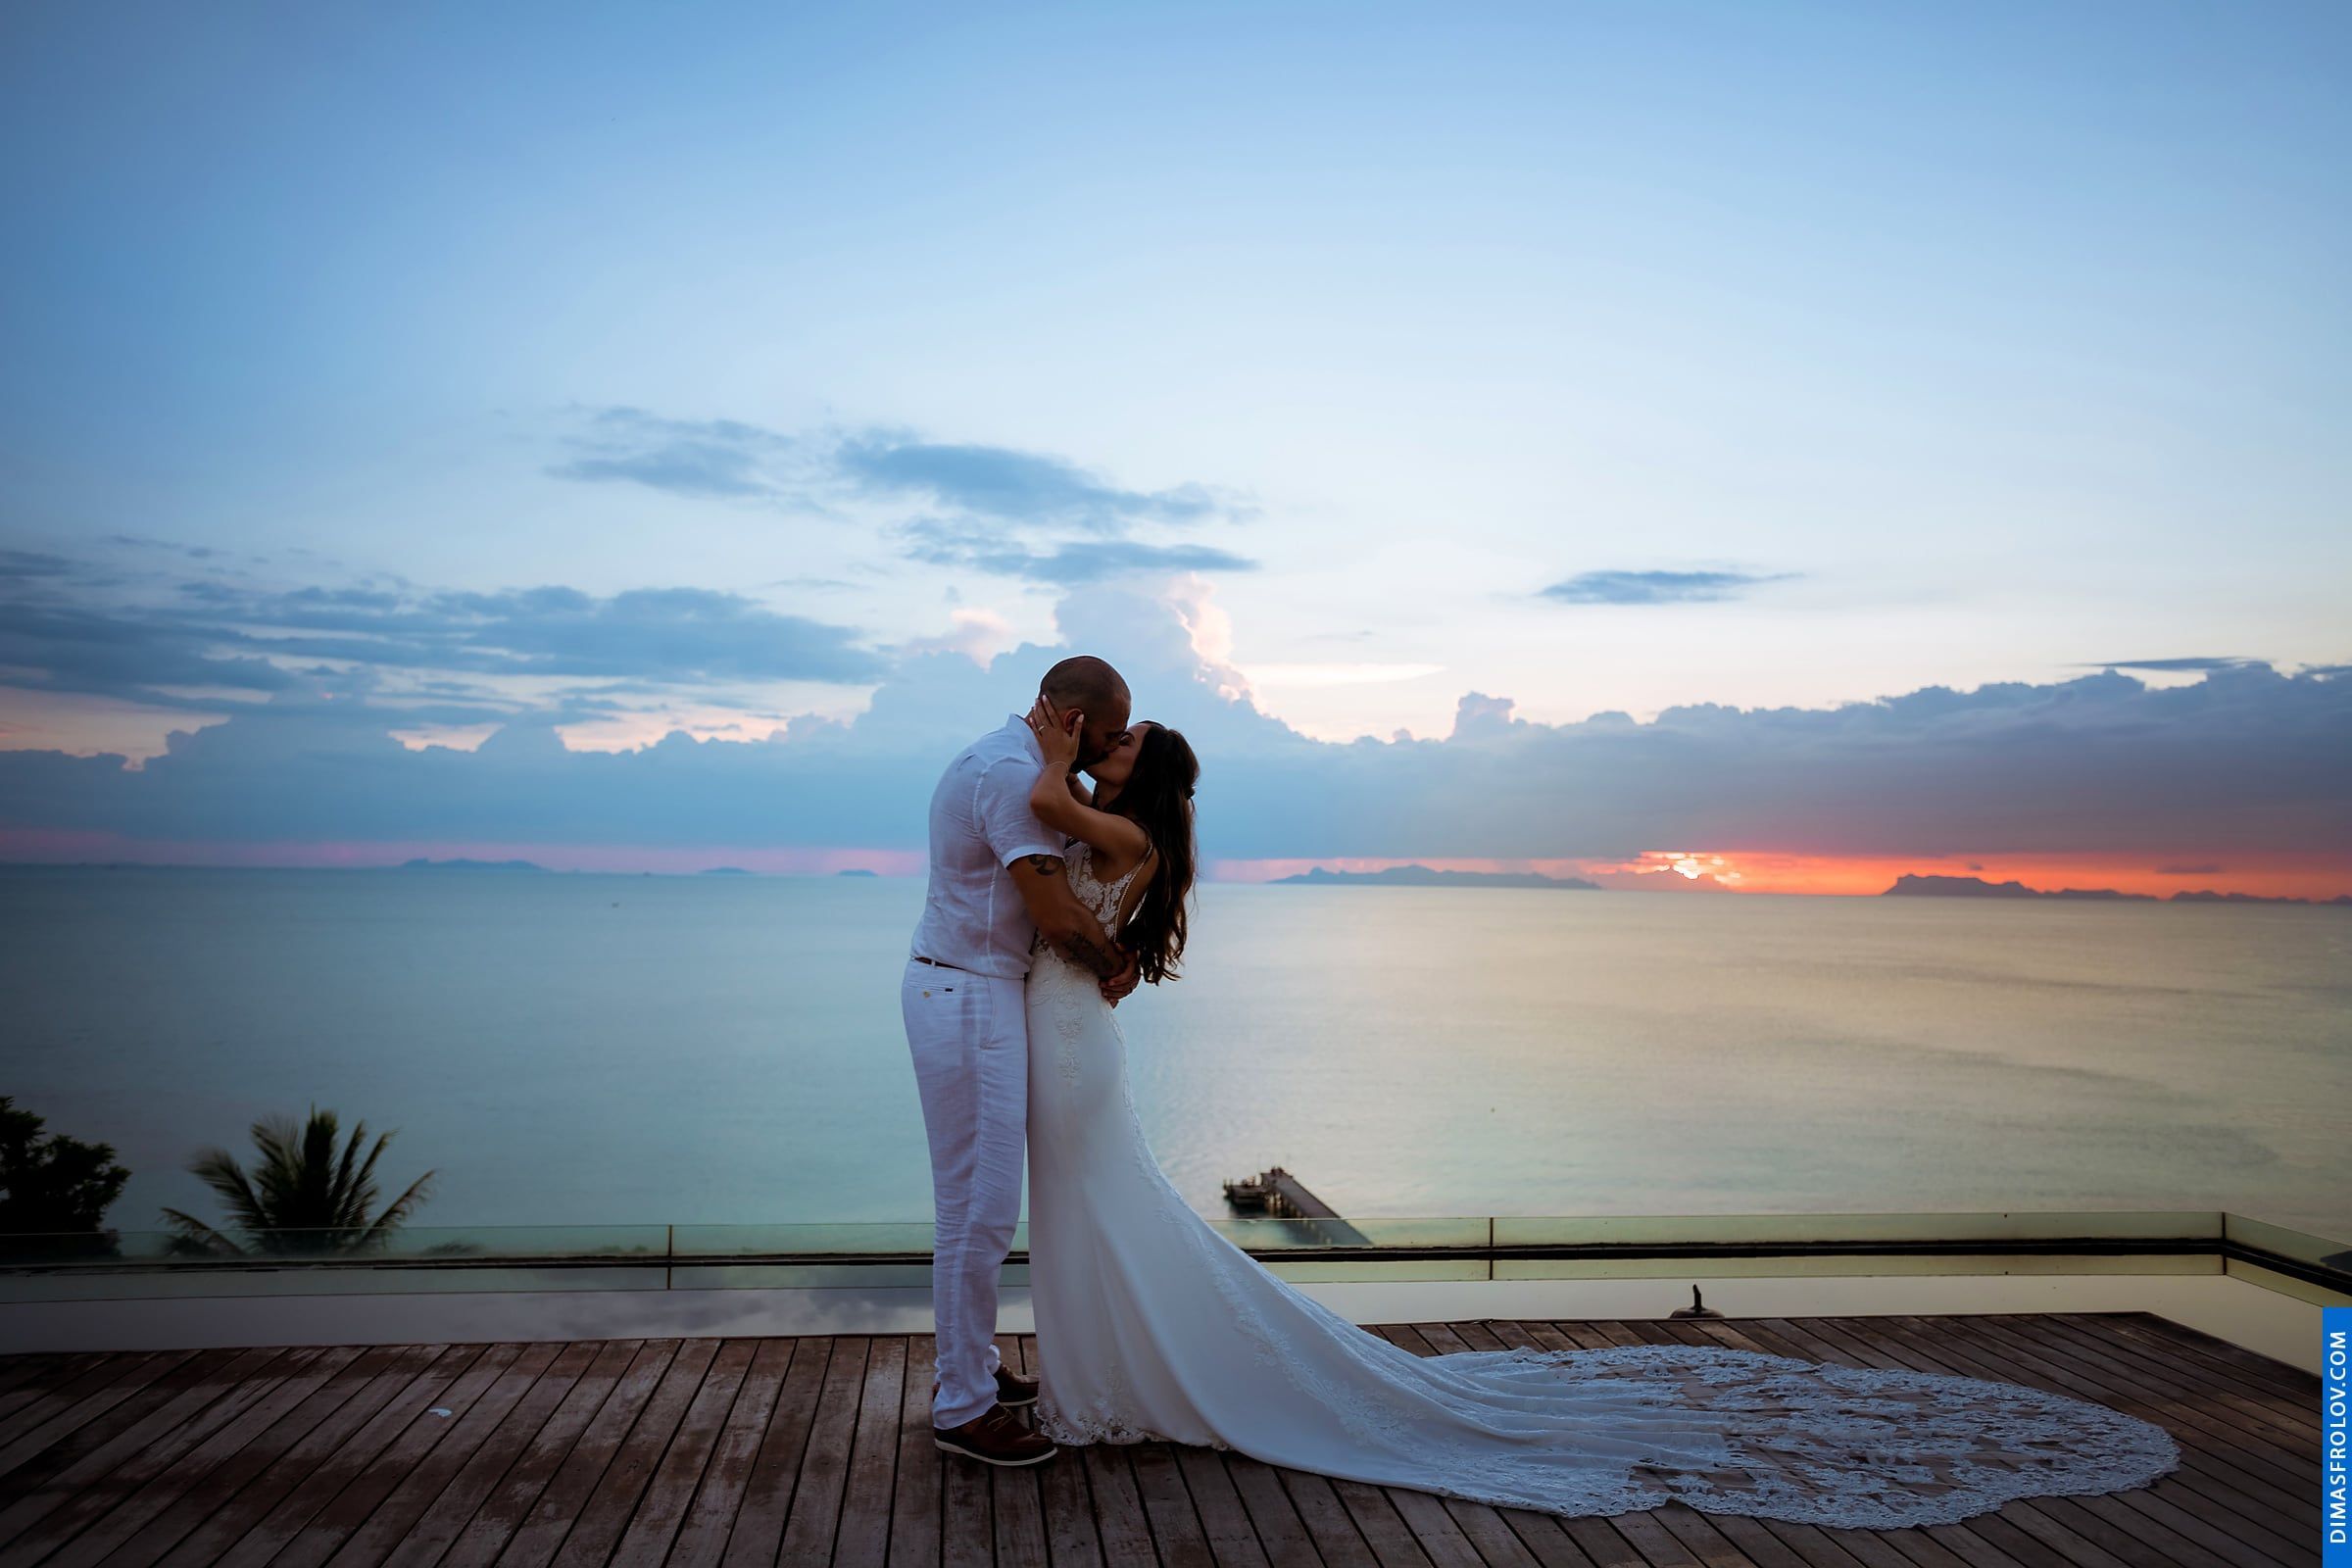 พิธีแต่งงาน ณ โรงแรมอินเตอร์คอนติเนนตัล เกาะสมุย - Natalie & Simon. บาทต่อภาพ 48393 (2023-05-04 03:54:40)